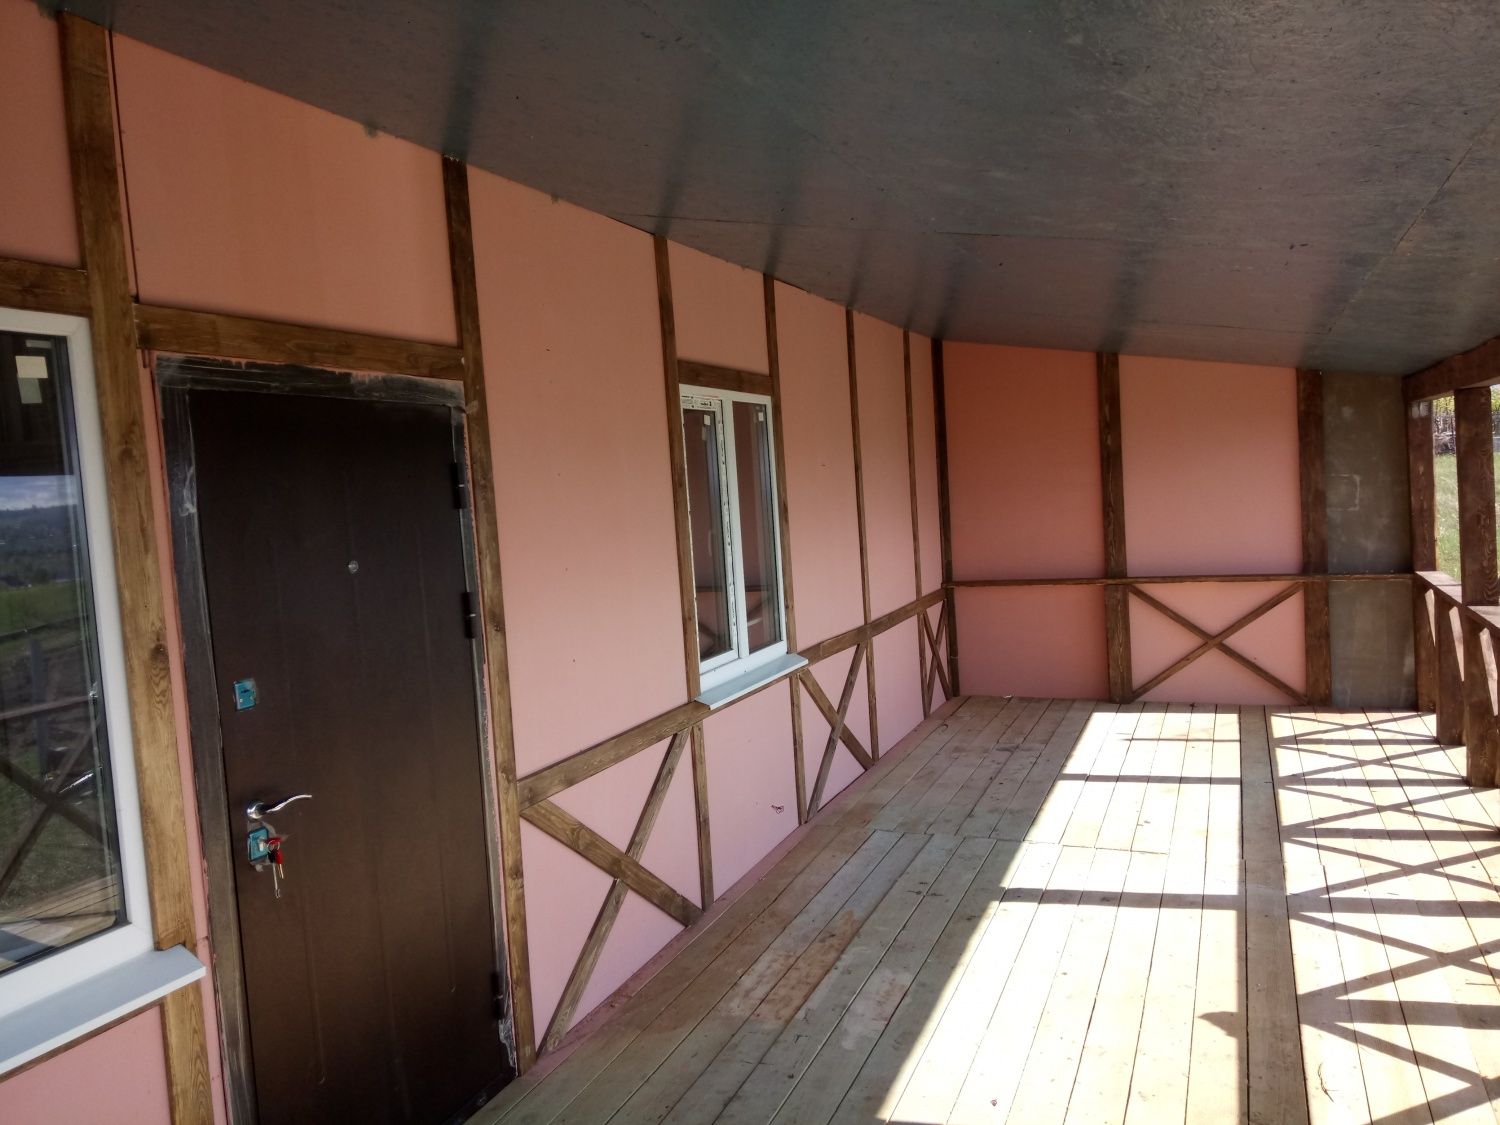   Завершена внешняя и внутренняя отделка дачного дома в п.Водино.